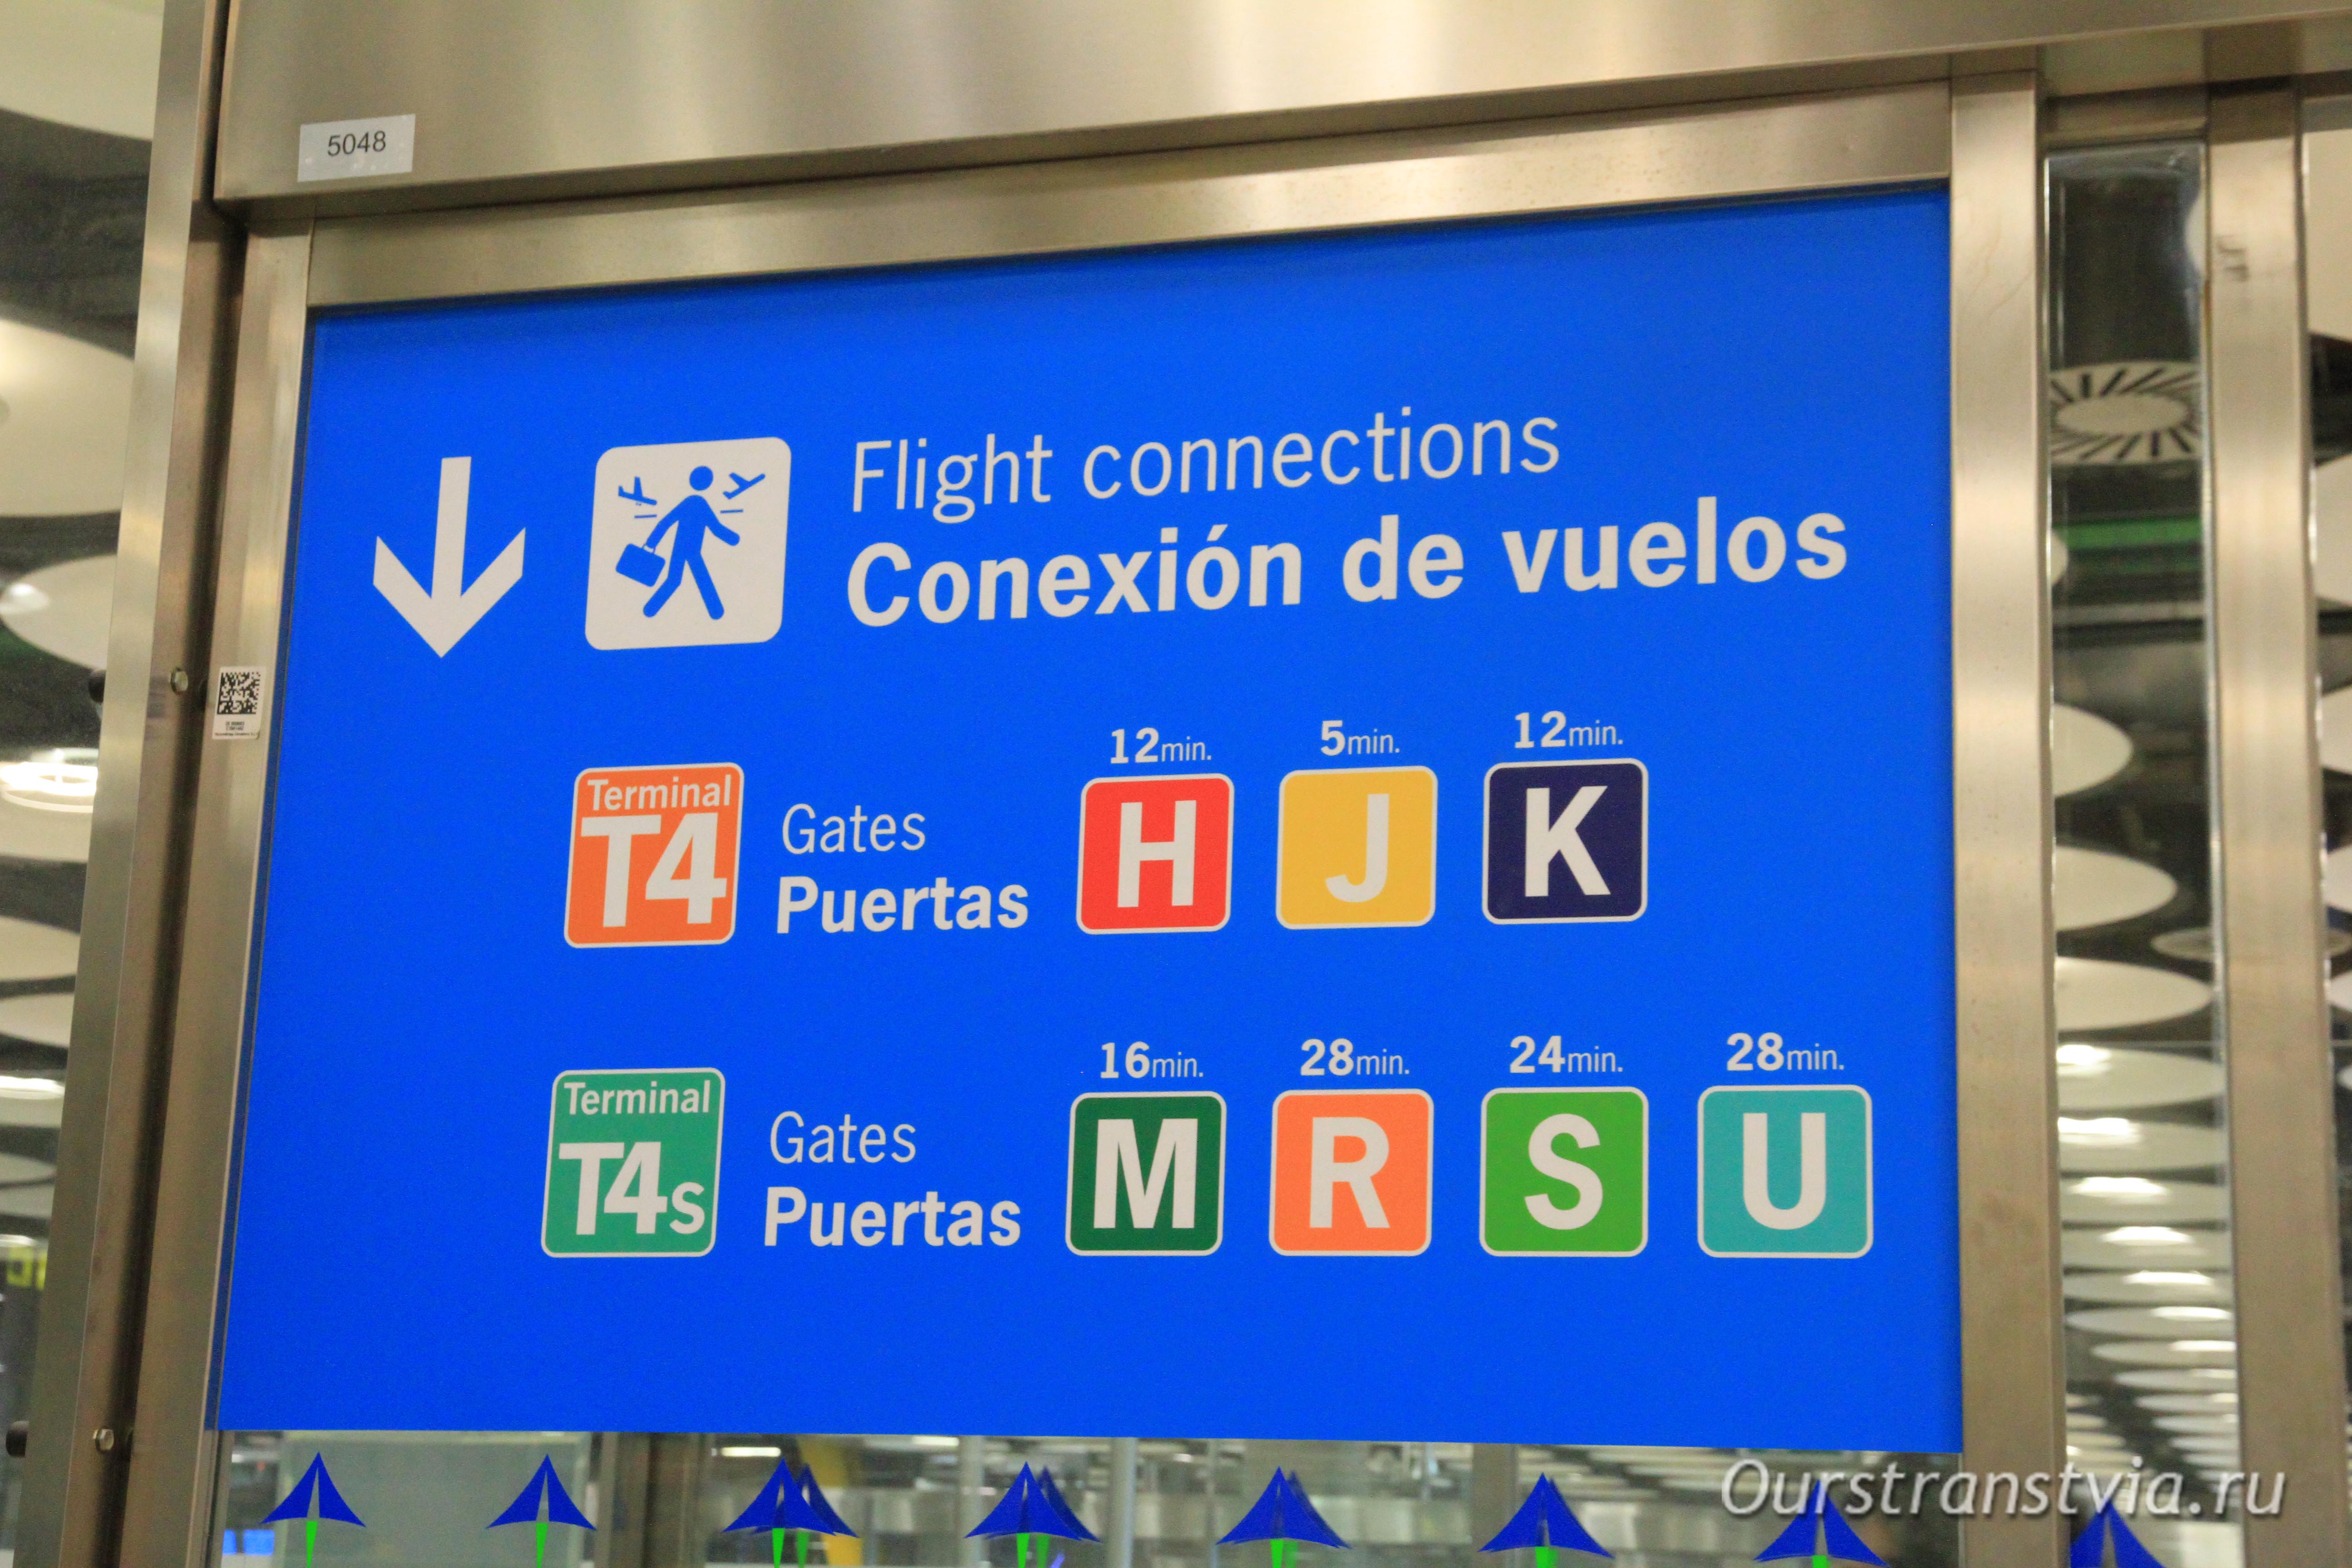 Пересадка из T4 в Т4S в Barajas, аэропорт Мадрида